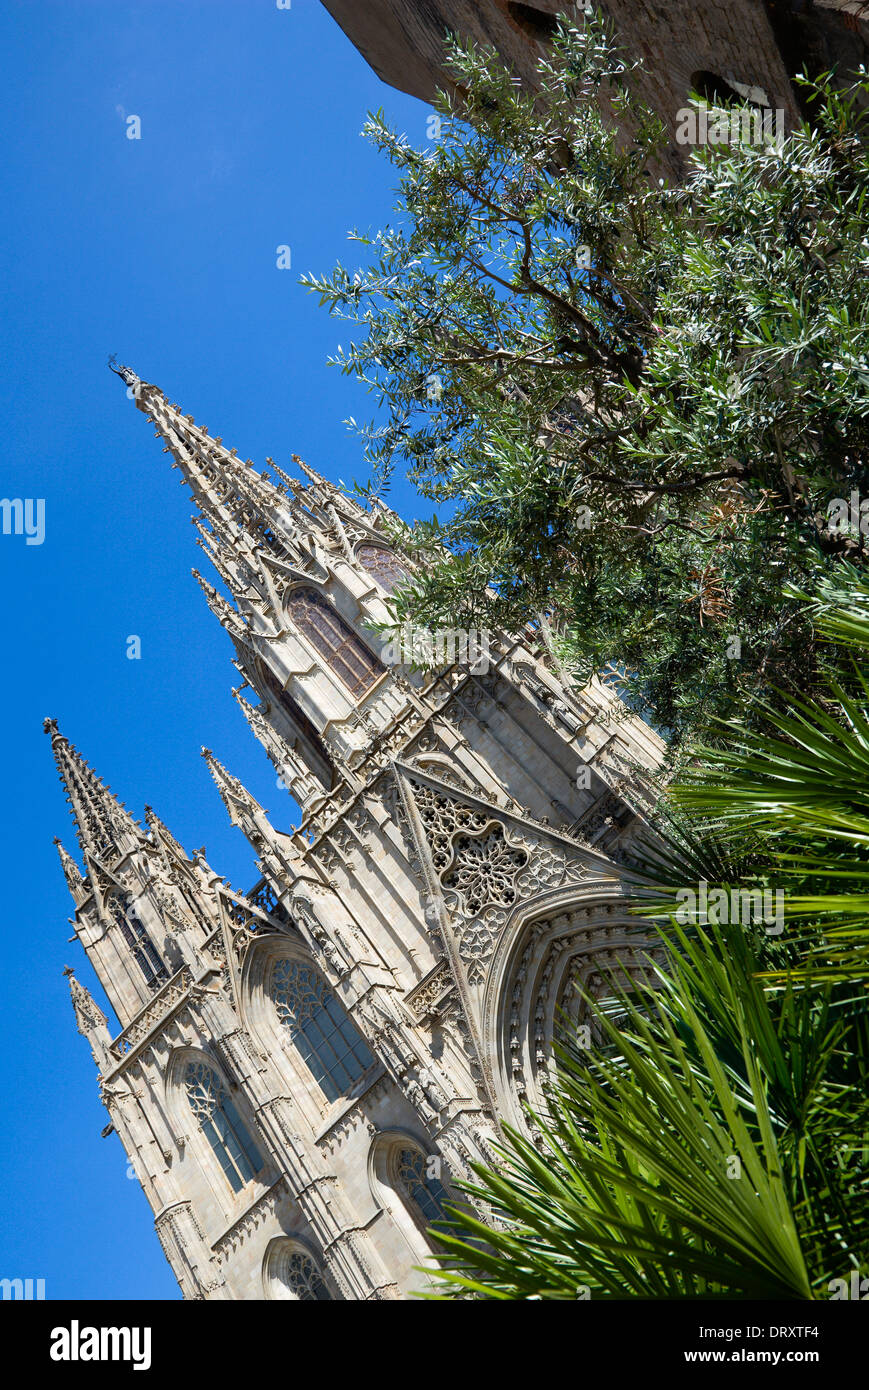 In Spagna, in Catalogna, Barcellona, la facciata principale e la guglia della cattedrale gotica con gli ulivi e le palme in primo piano. Foto Stock